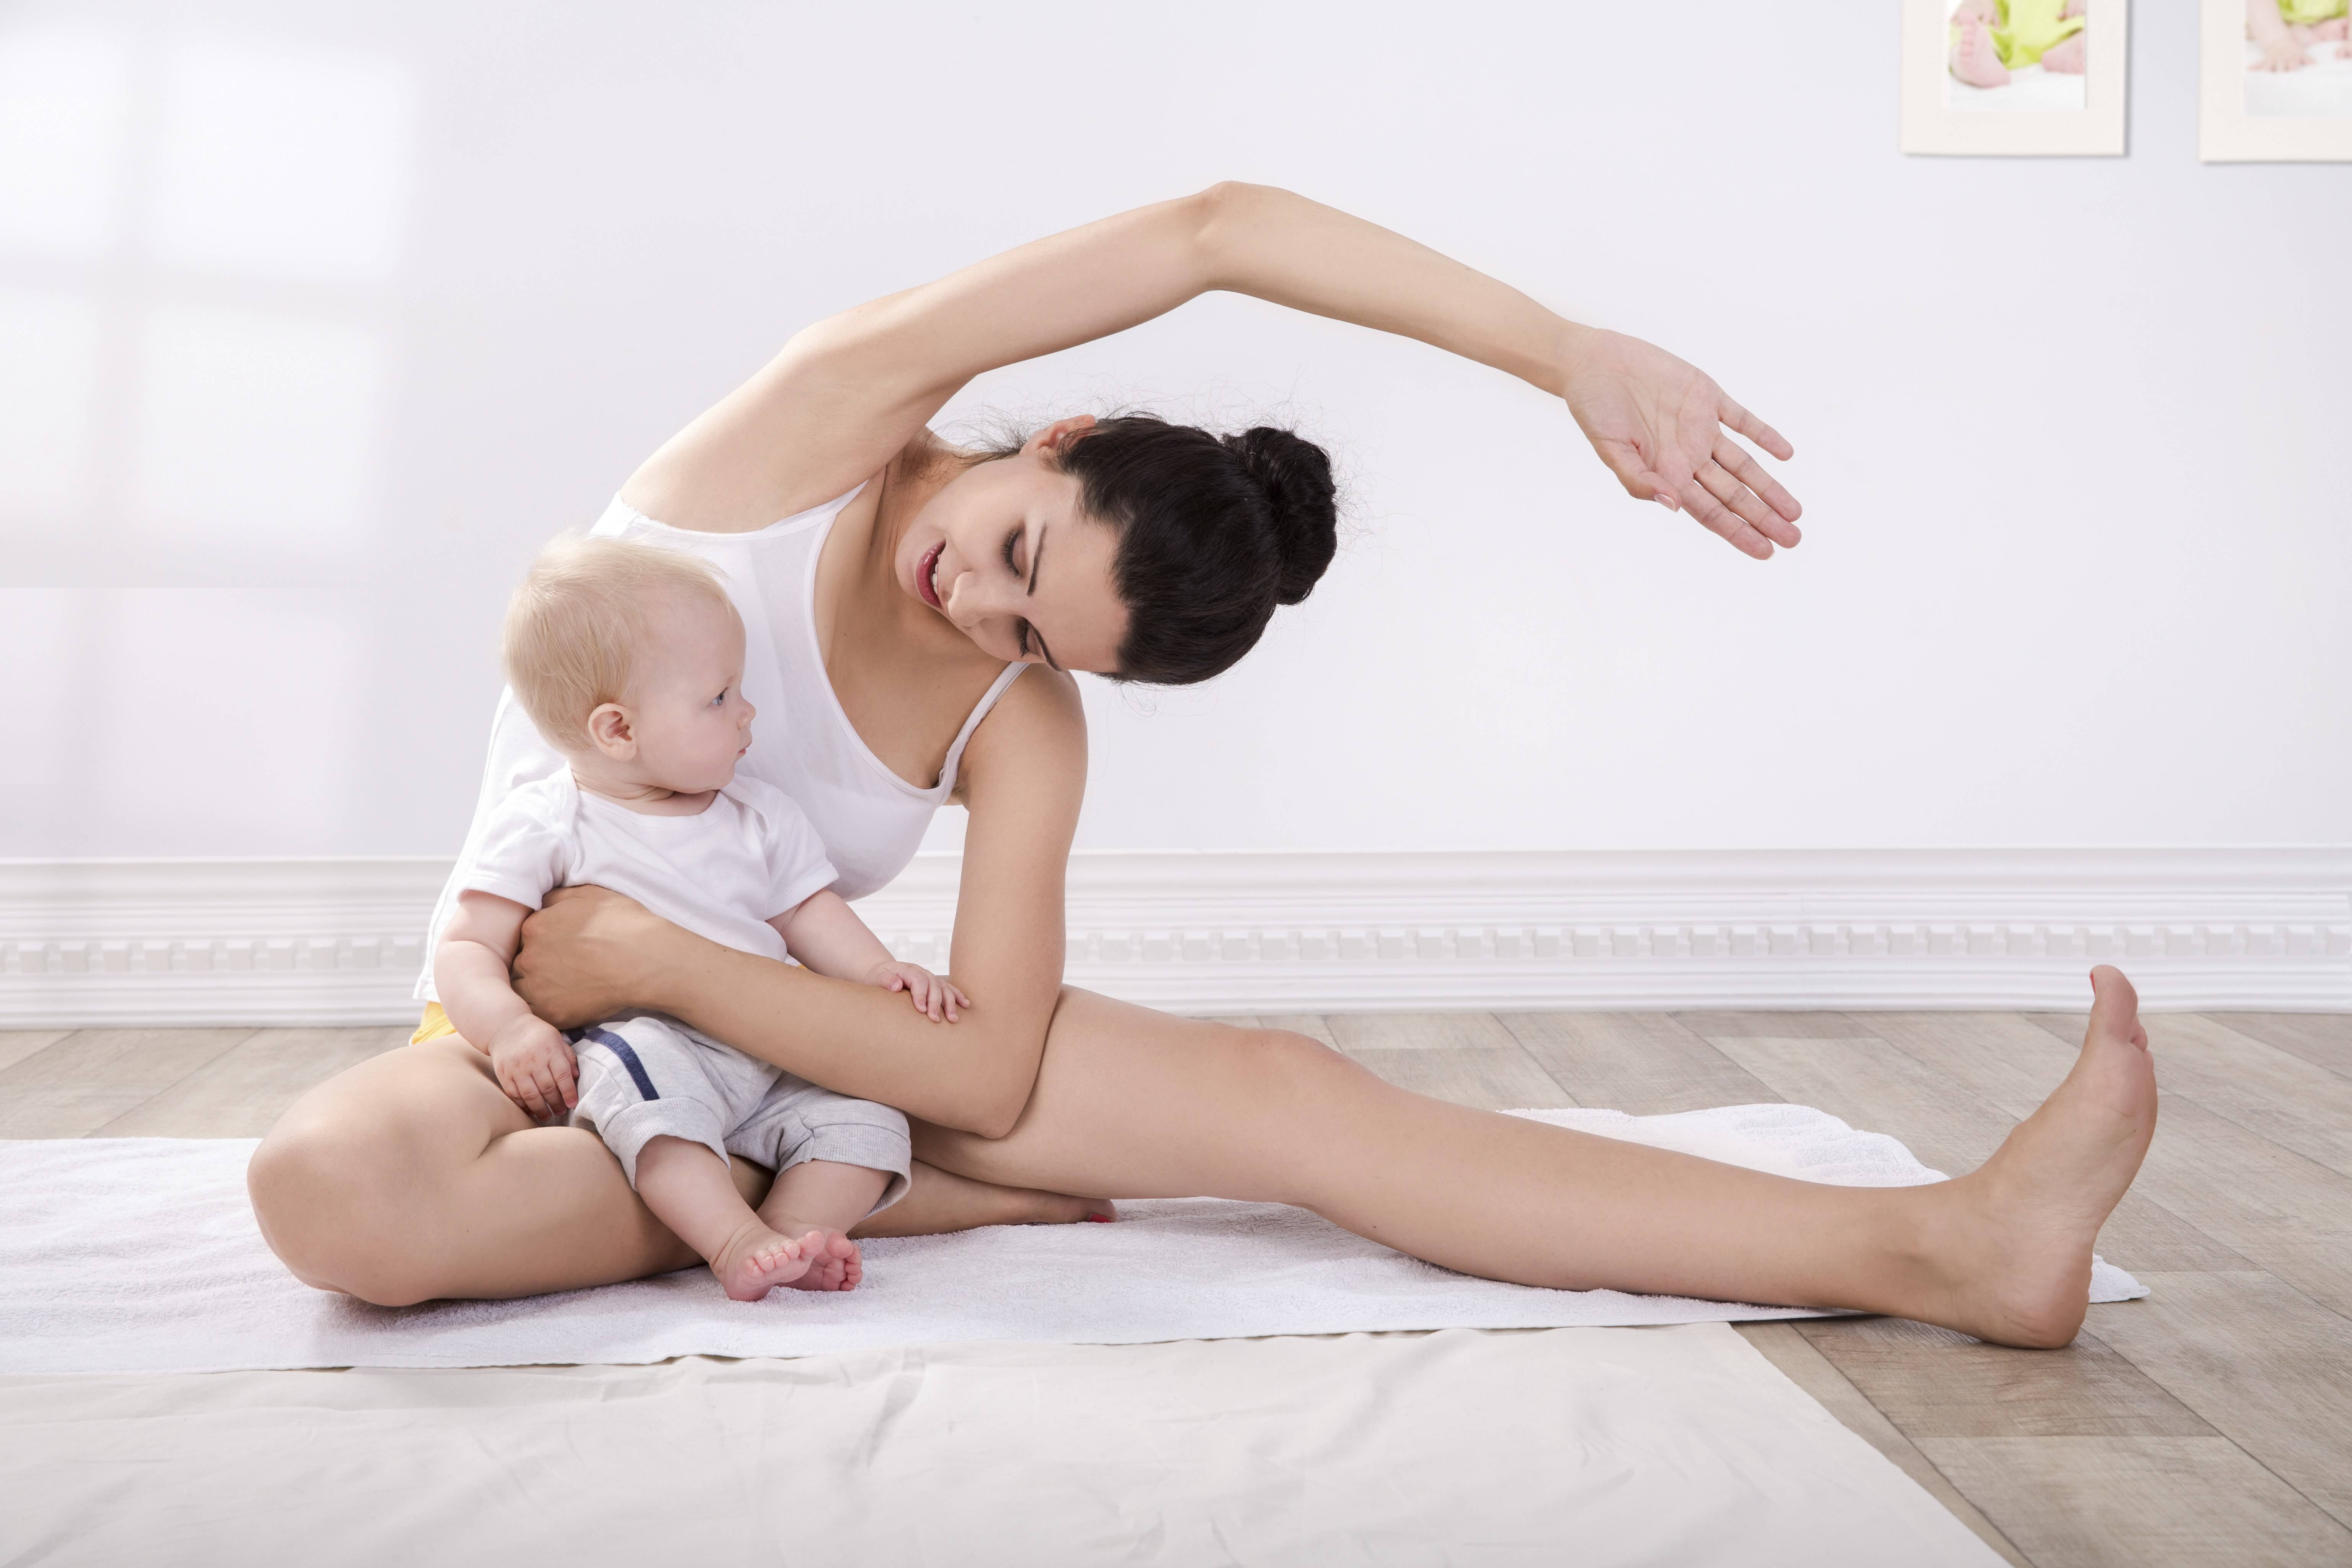 Йога для беременных по триместрам - польза для мамы и ребенка